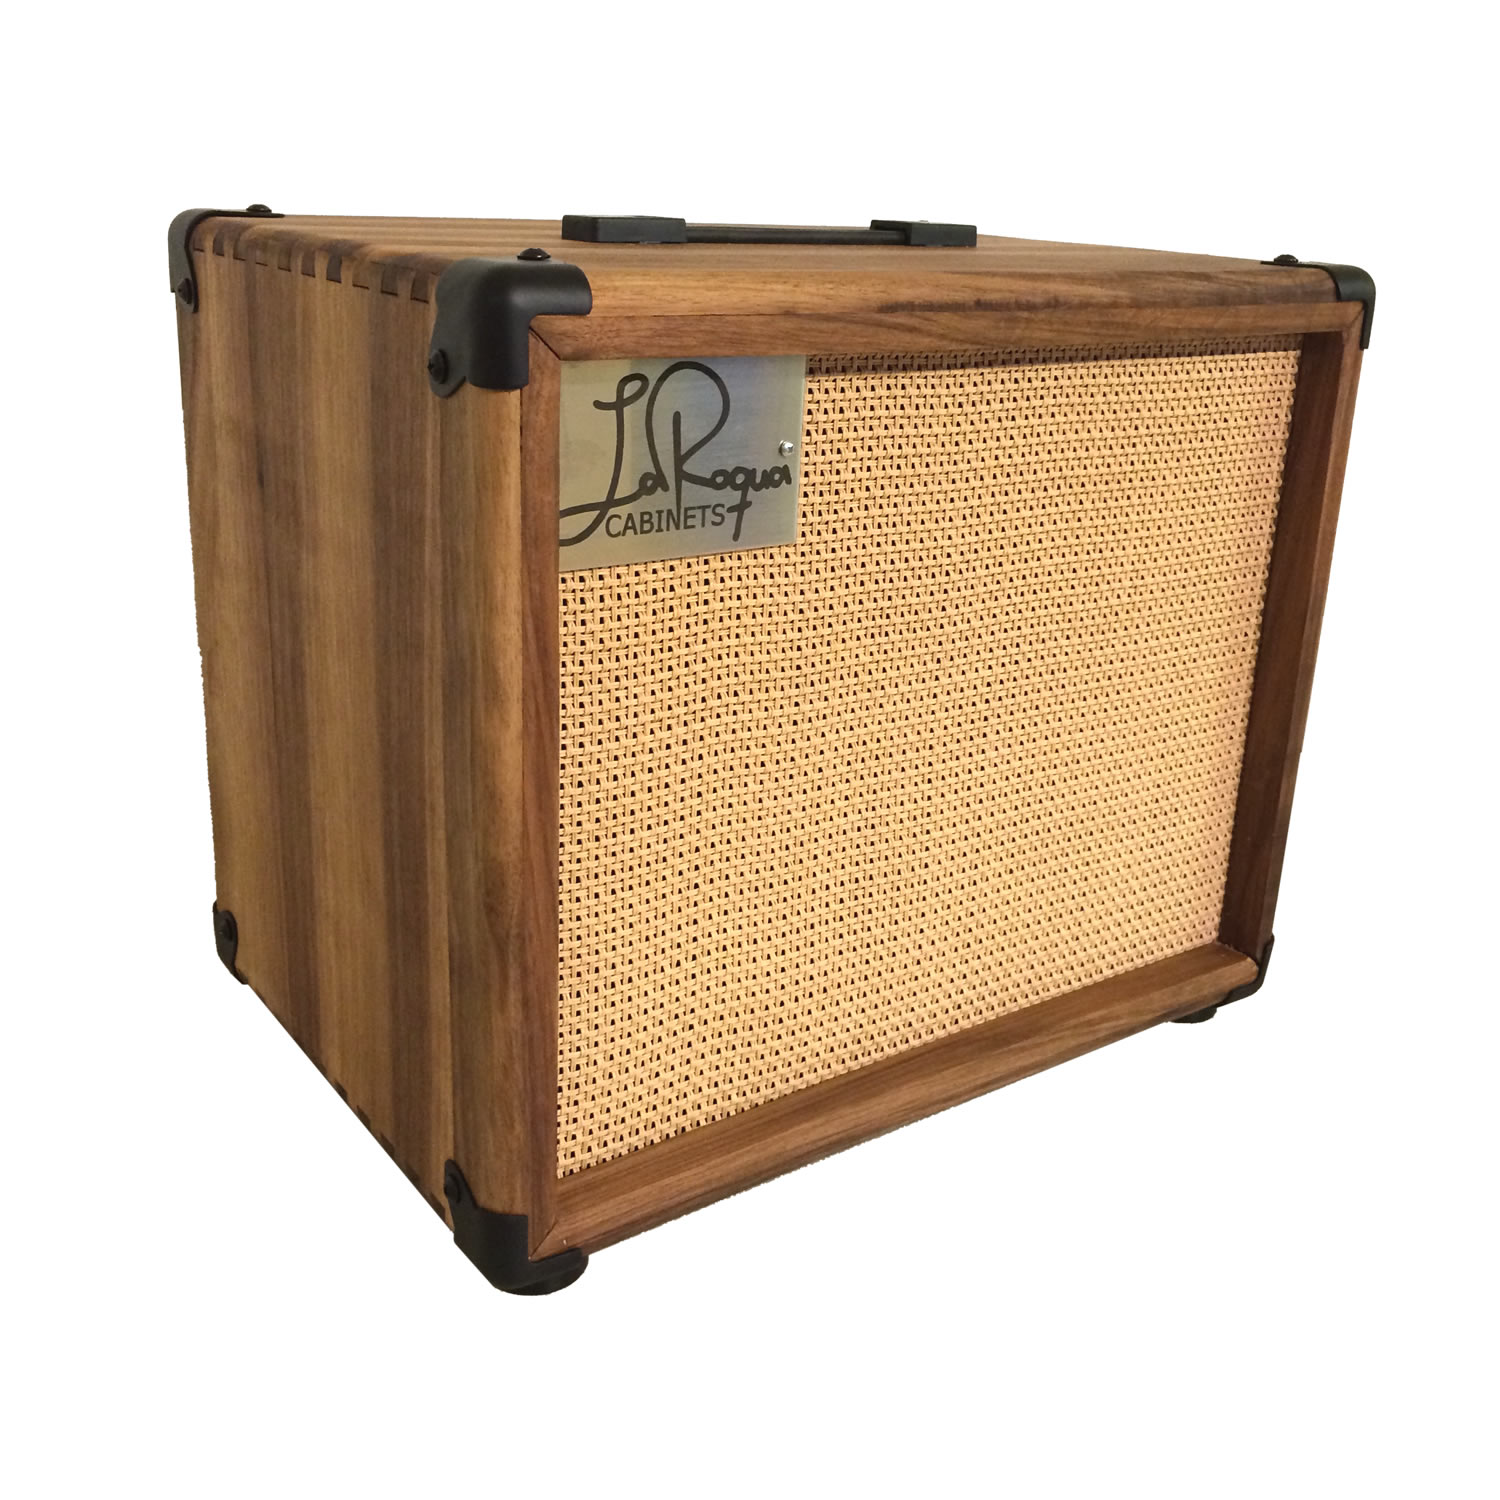 LaRoqua 110 Air Series Made in Germany Custom Gitarrenbox mit einem zehn Zoll Lautsprecher aus der Timberly Reihe in natürlichem Holz-Look.